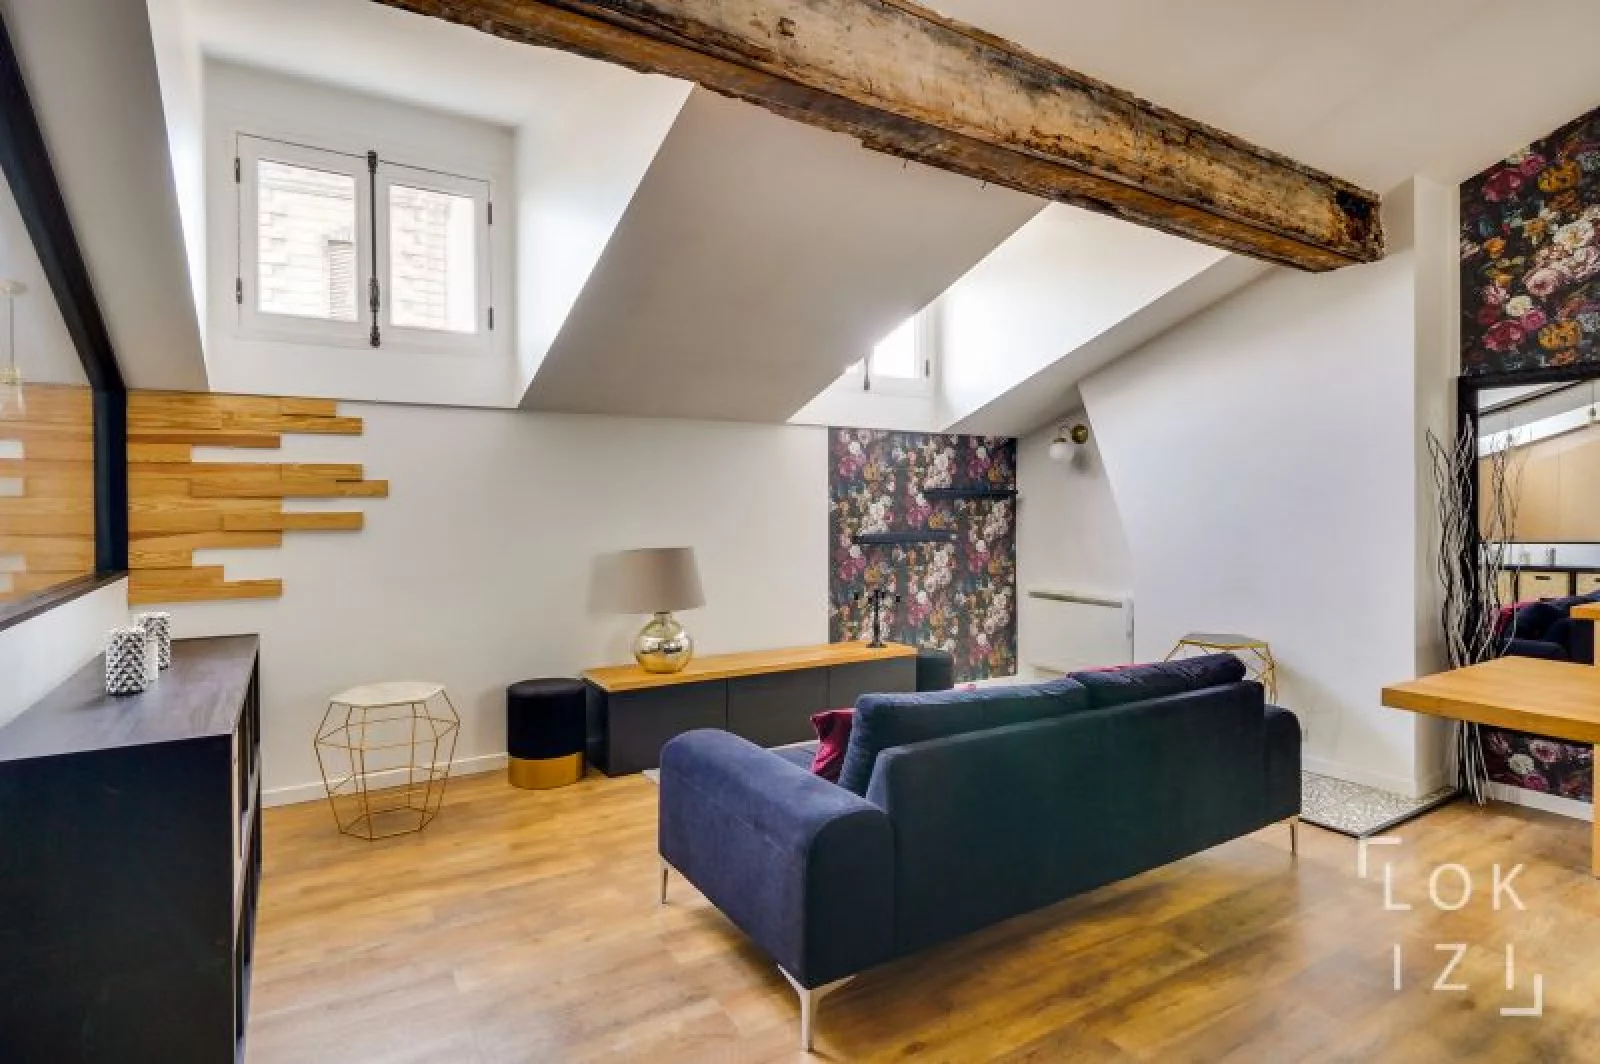 Location appartement meublé 2 pièces 39m² (Bordeaux centre - Victor Hugo)